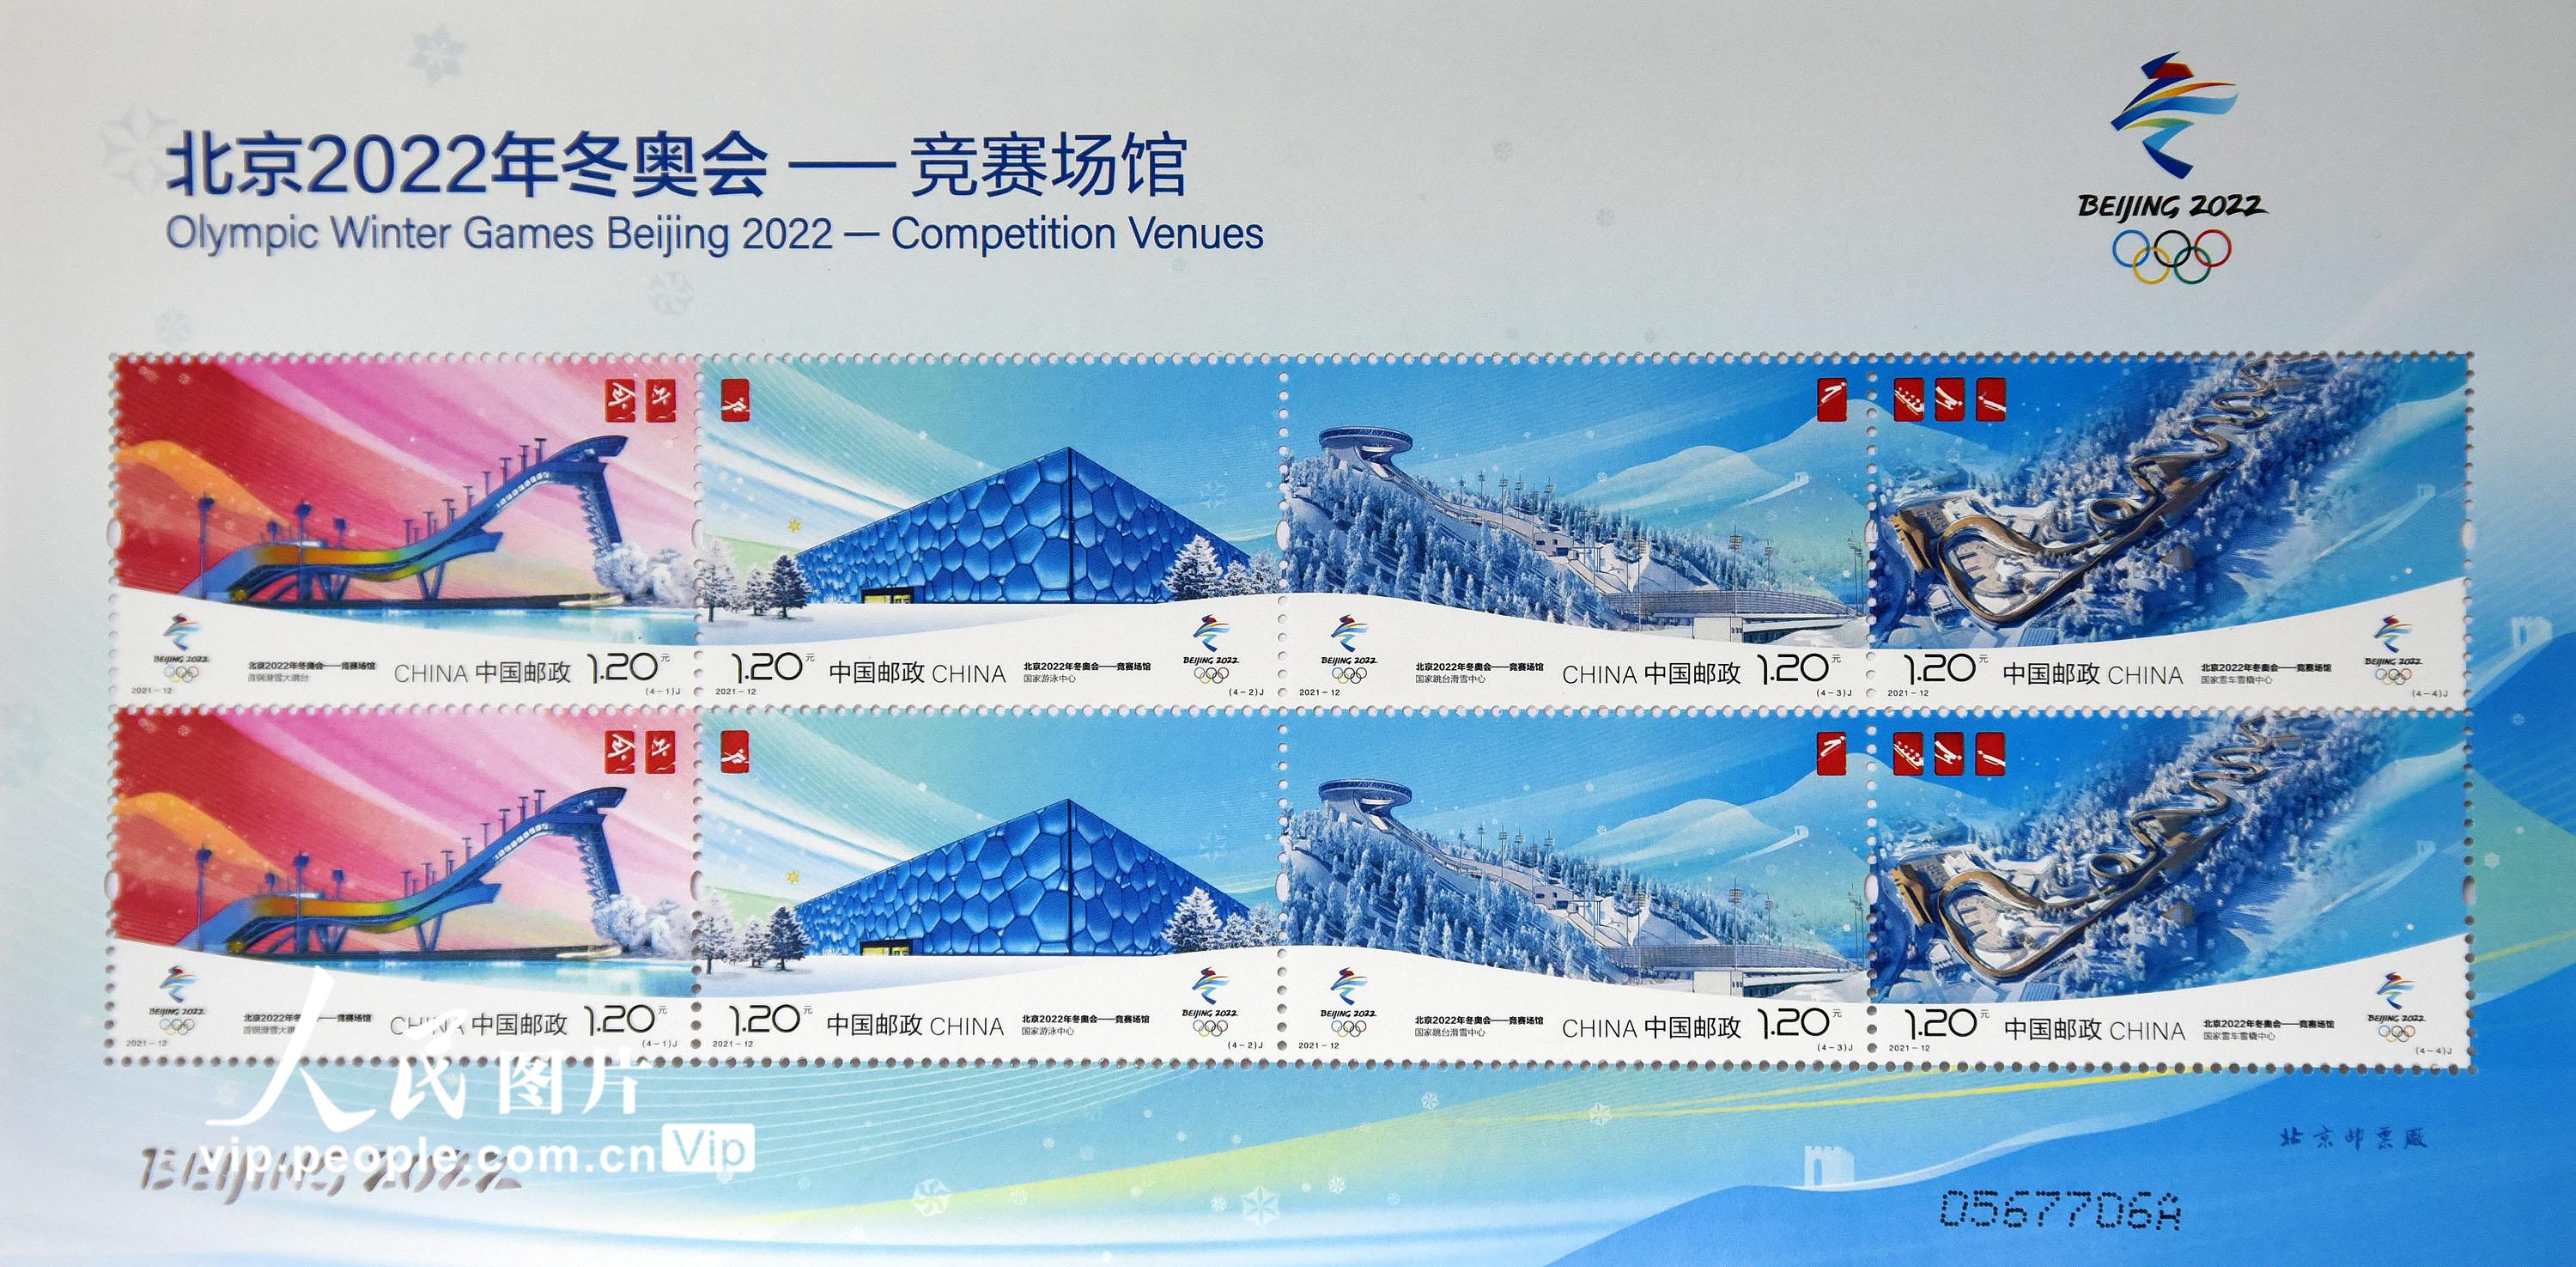 《北京2022年冬奧會——競賽場館》紀念郵票發行【3】